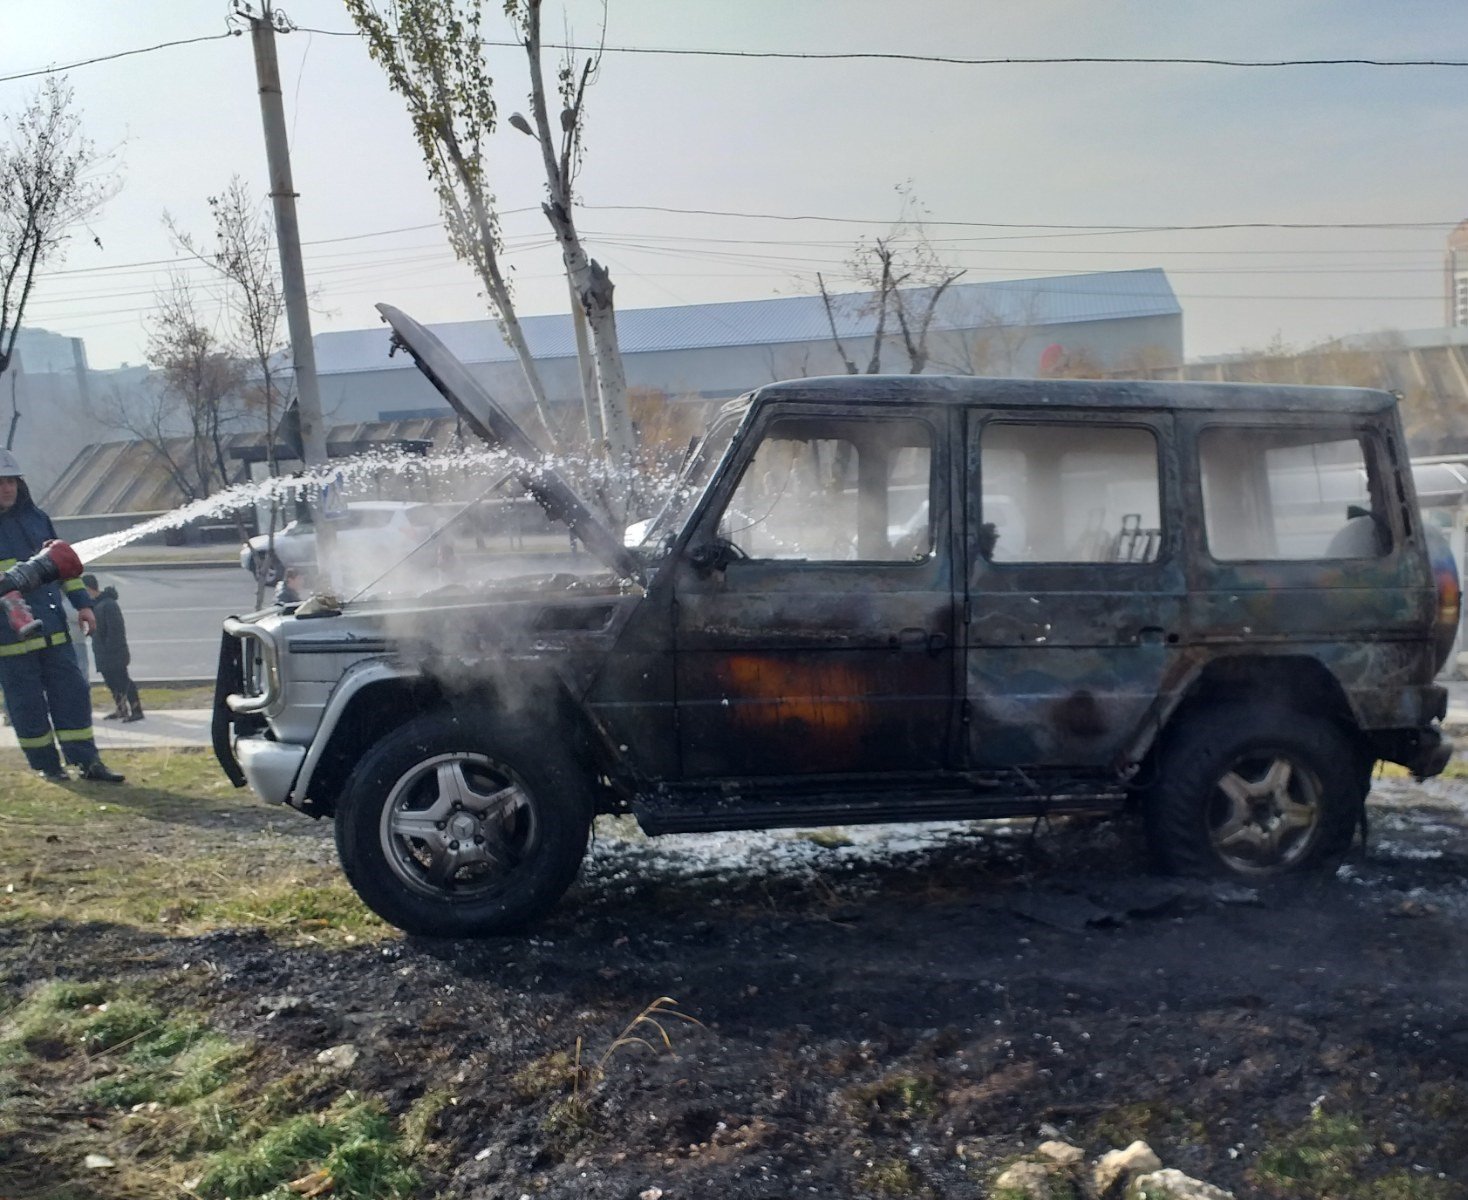 Երևանի դպրոցներից մեկի մոտ այրվել է «Mercedes-Benz» մակնիշի (յաշիկ) ավտոմեքենա